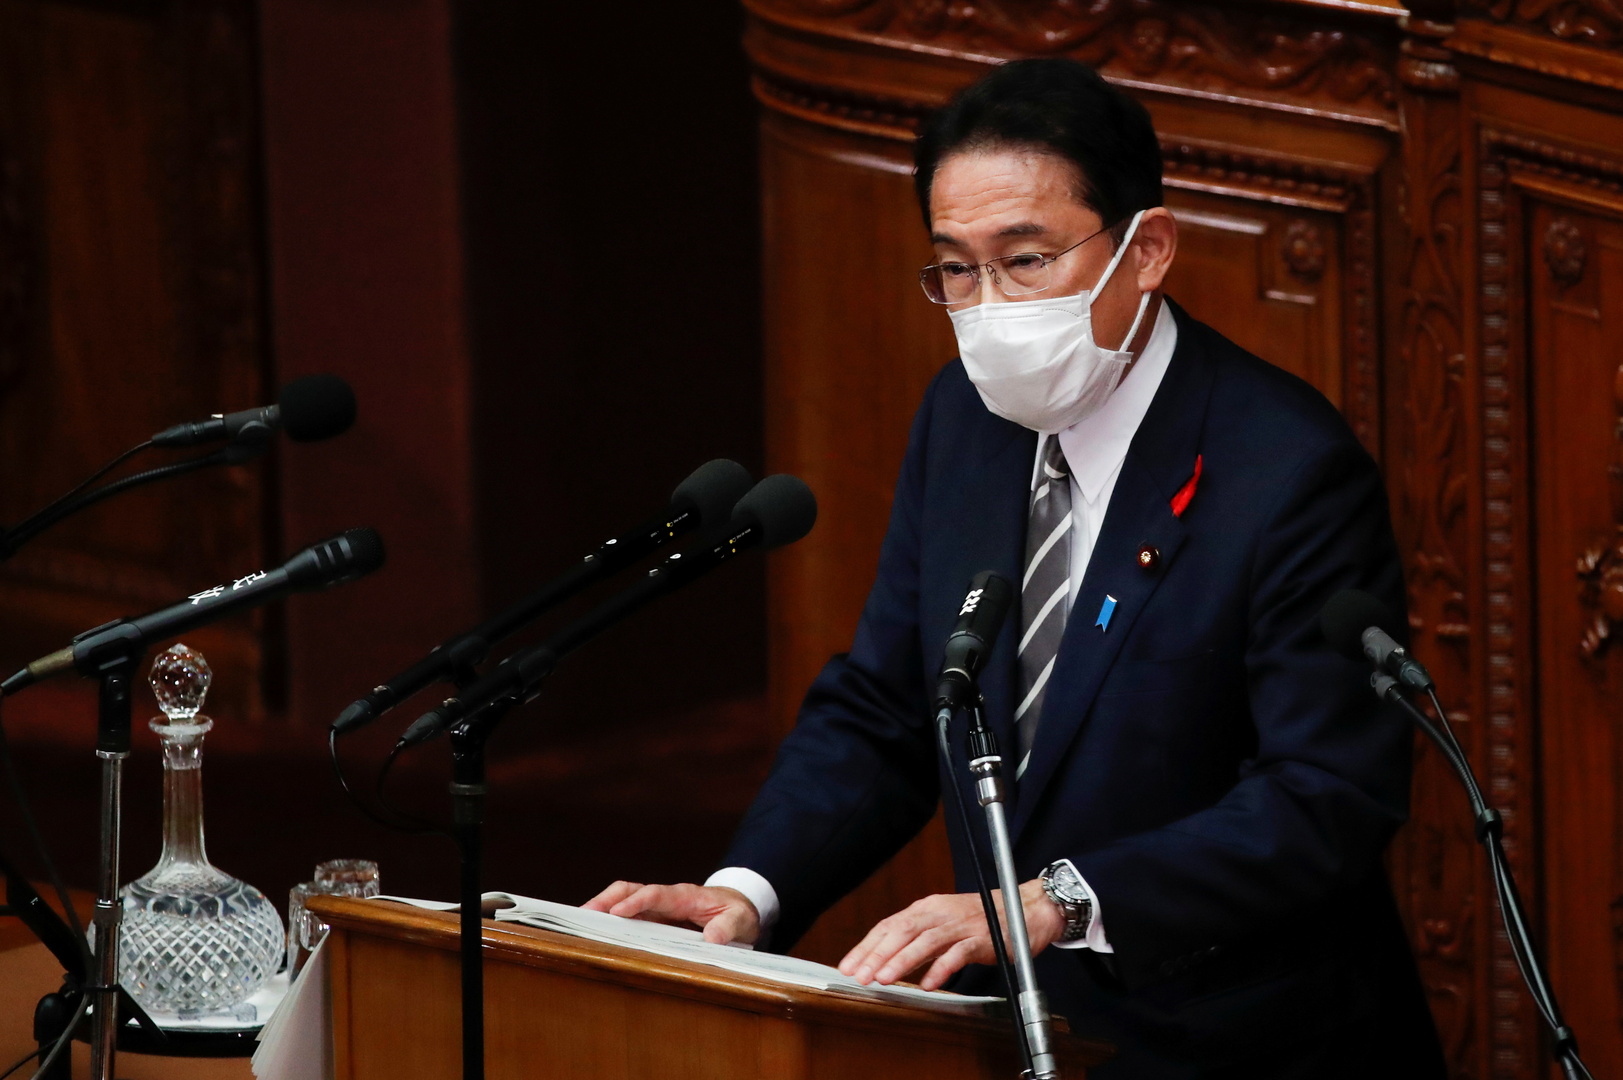 كيشيدا يعلن سيادة اليابان على جزر الكوريل الجنوبية